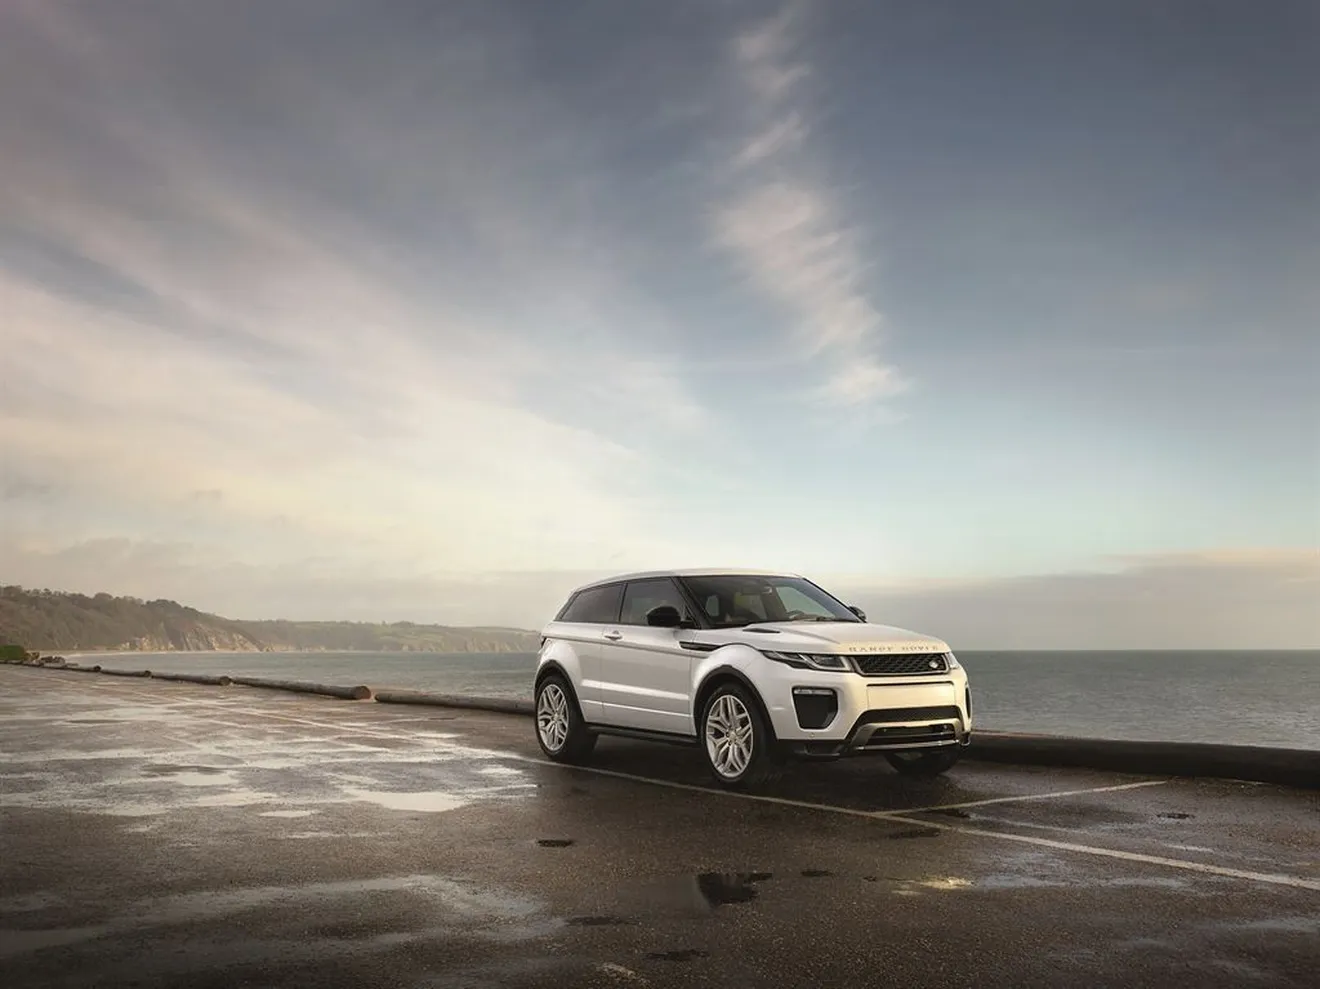 Range Rover Evoque 2015, al estilo se le une la eficiencia